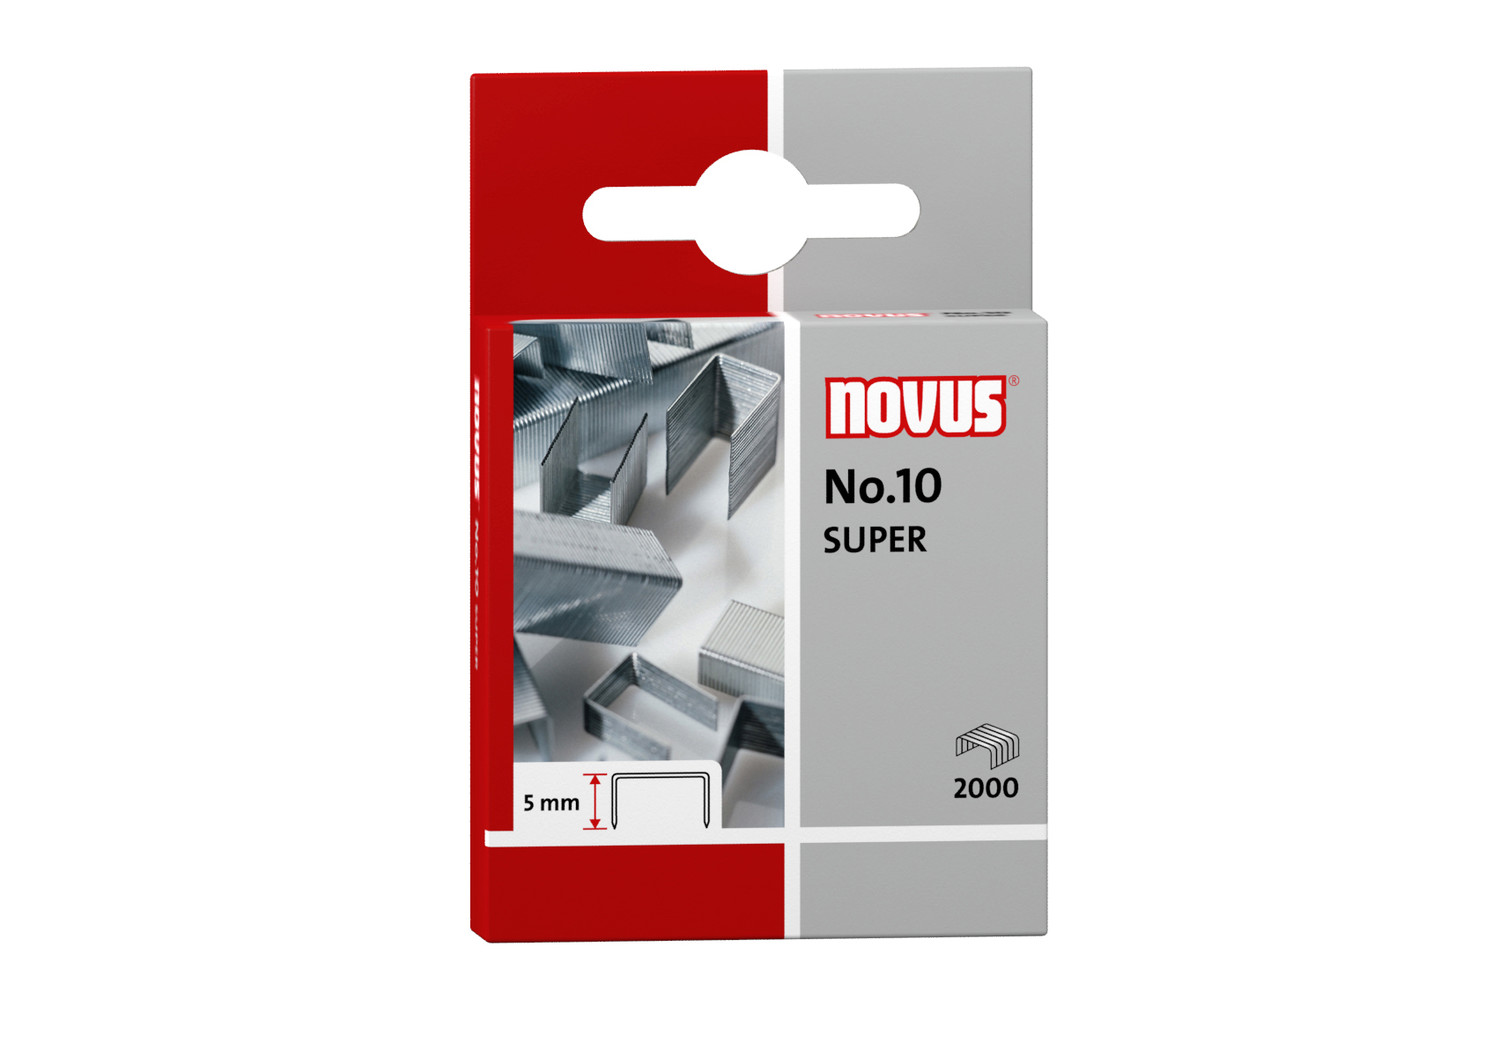 NOVUS No.10 SUPER